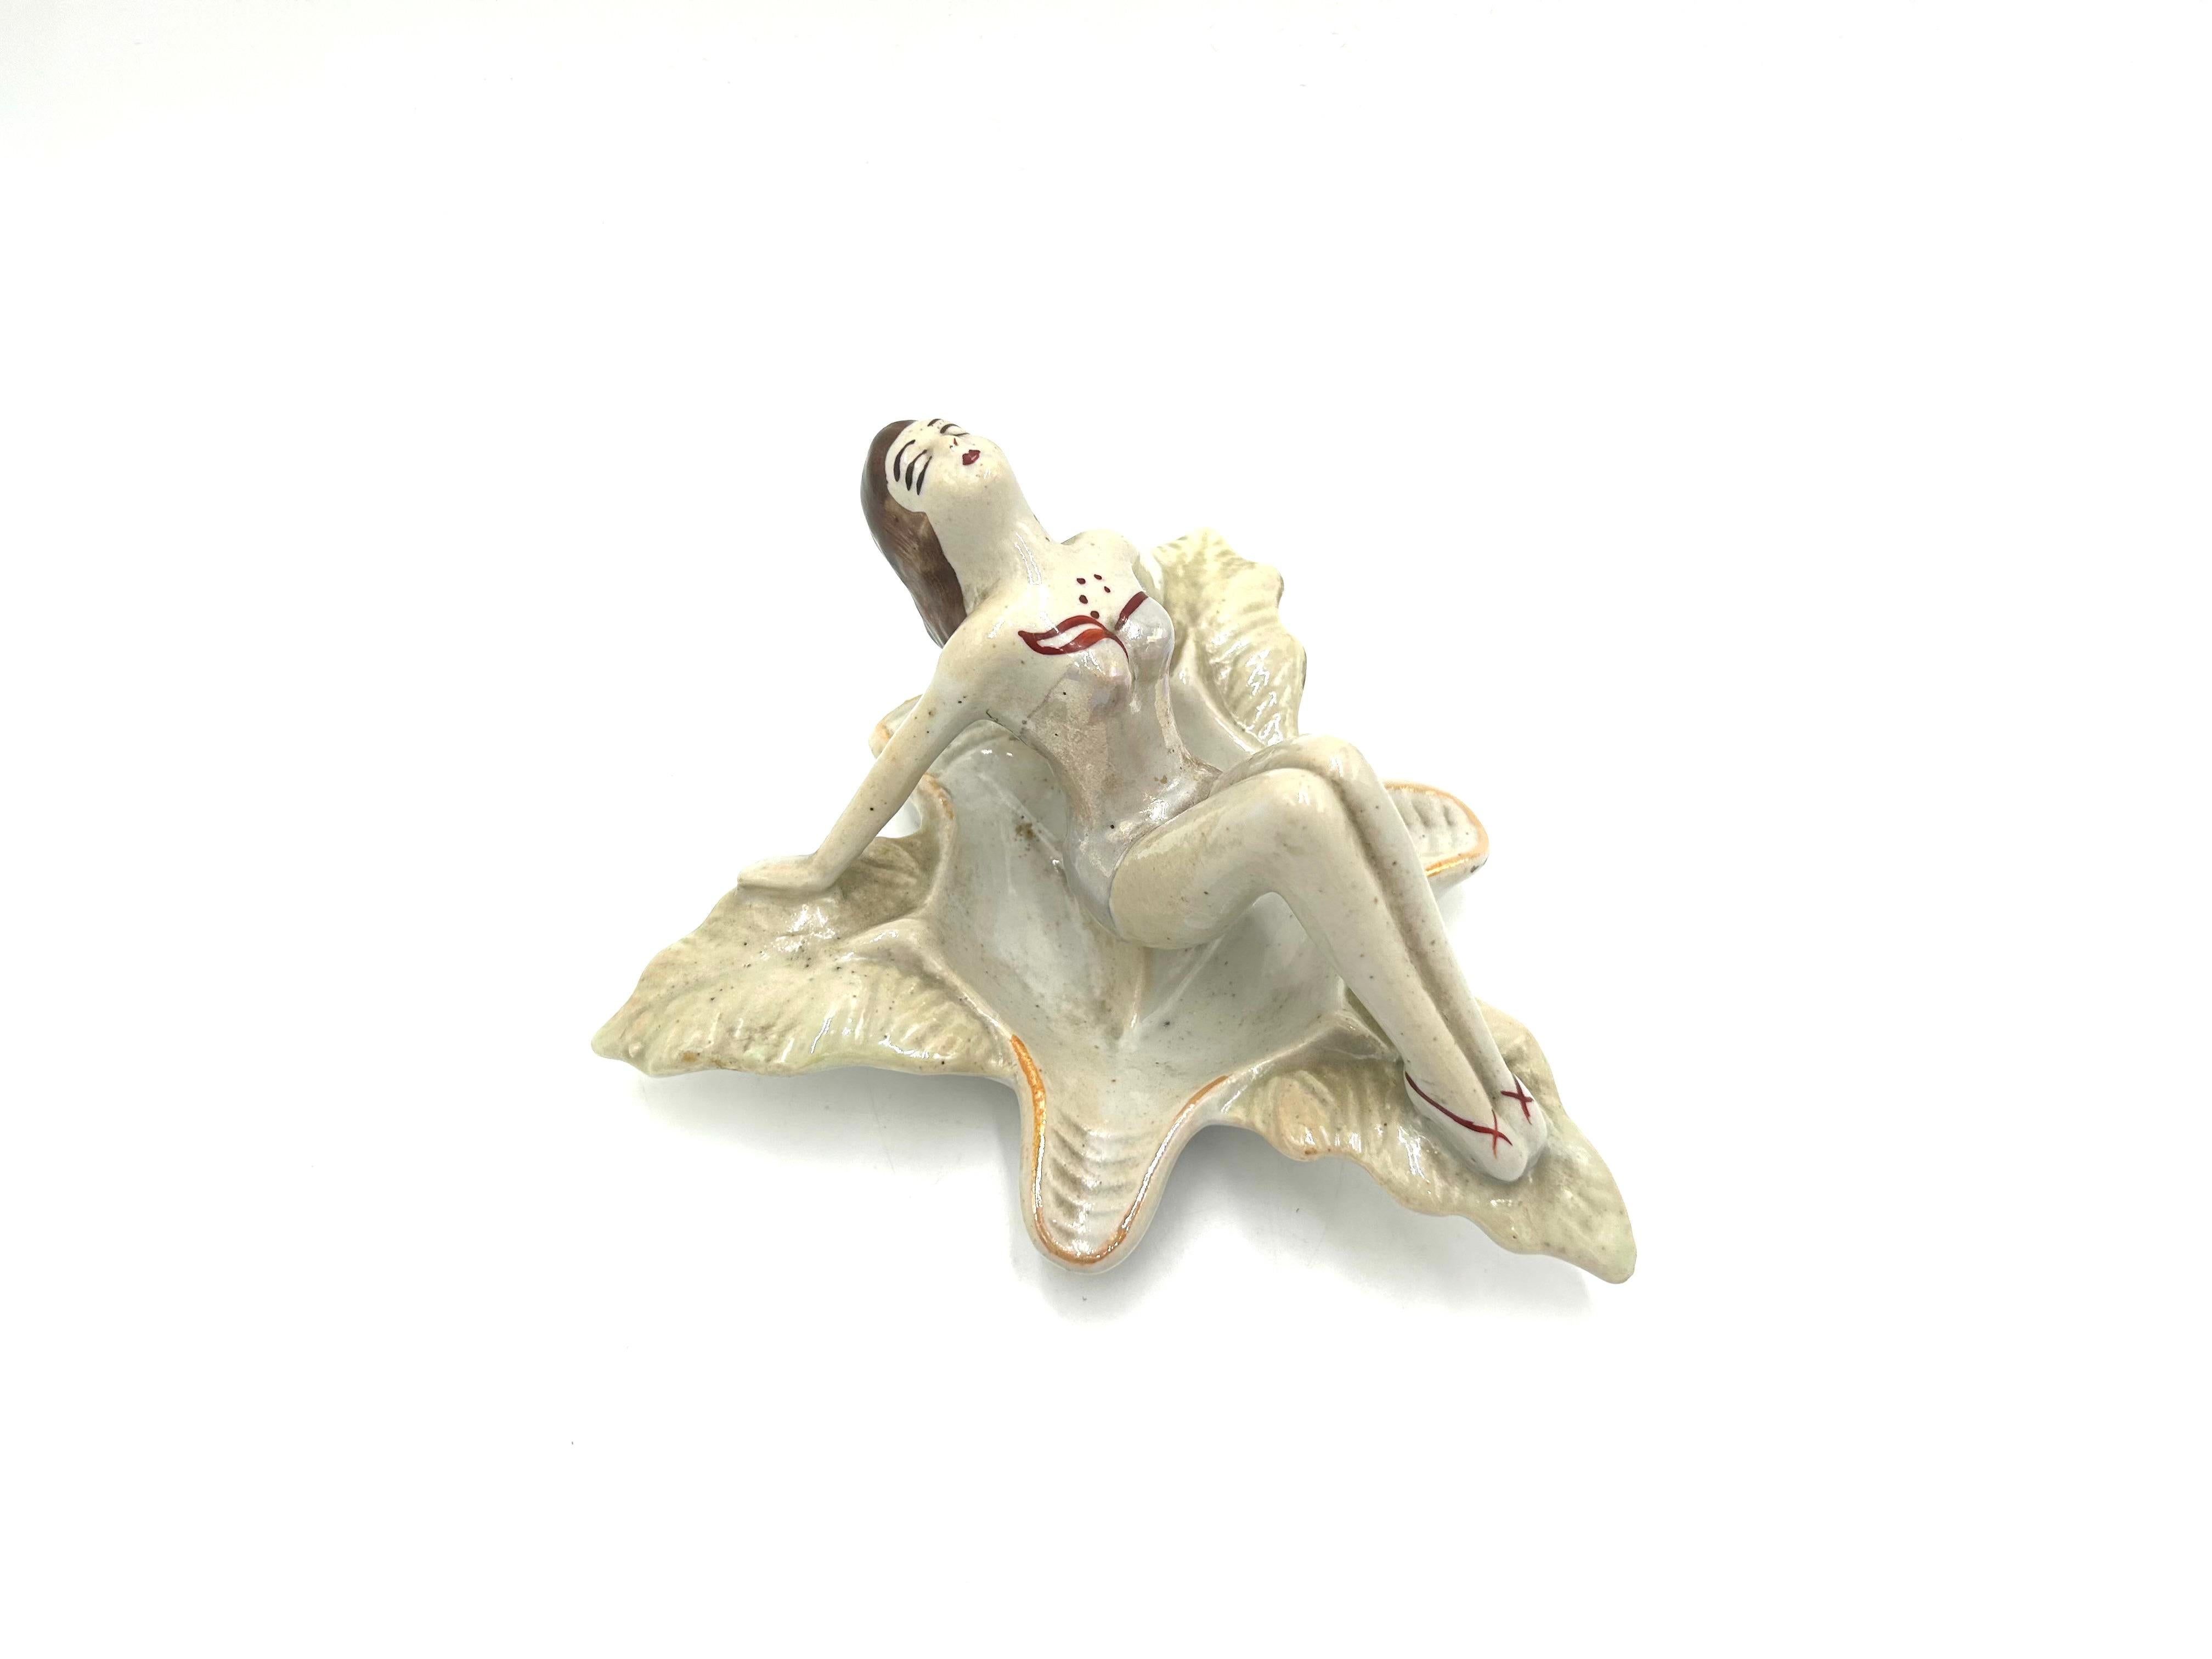 Der ikonische Aschenbecher in Form einer Frau im Badeanzug, die auf einem Blatt sitzt. Entworfen von Zygmunt Buksowicz für die Steatyt-Fabrik in Kattowitz.

Sehr guter Zustand, keine Schäden

Höhe 10cm Breite 17x17cm